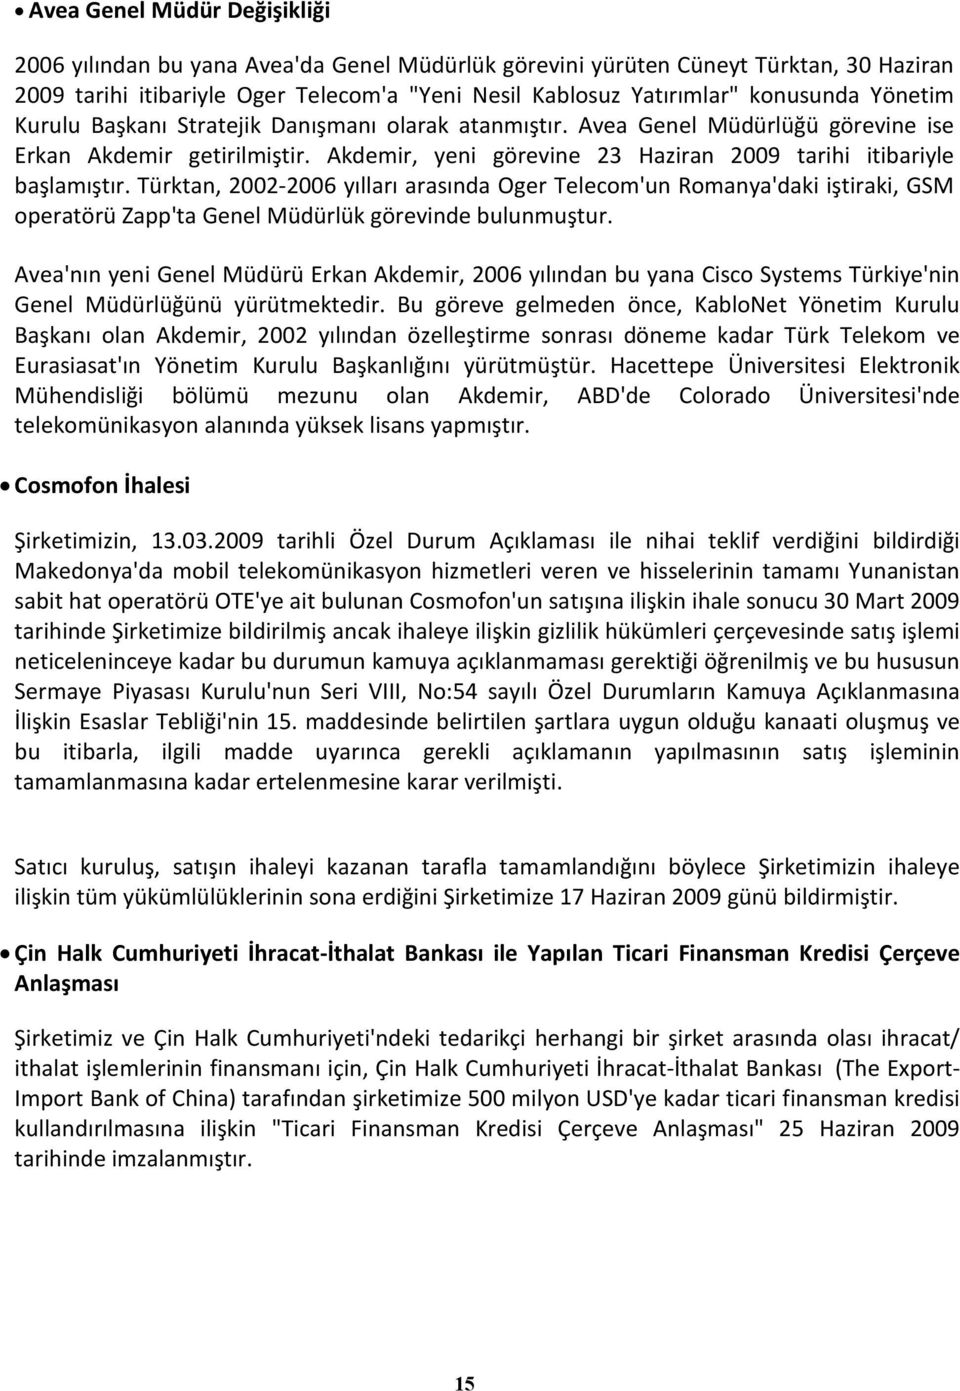 Türktan, 2002-2006 yılları arasında Oger Telecom'un Romanya'daki iştiraki, GSM operatörü Zapp'ta Genel Müdürlük görevinde bulunmuştur.